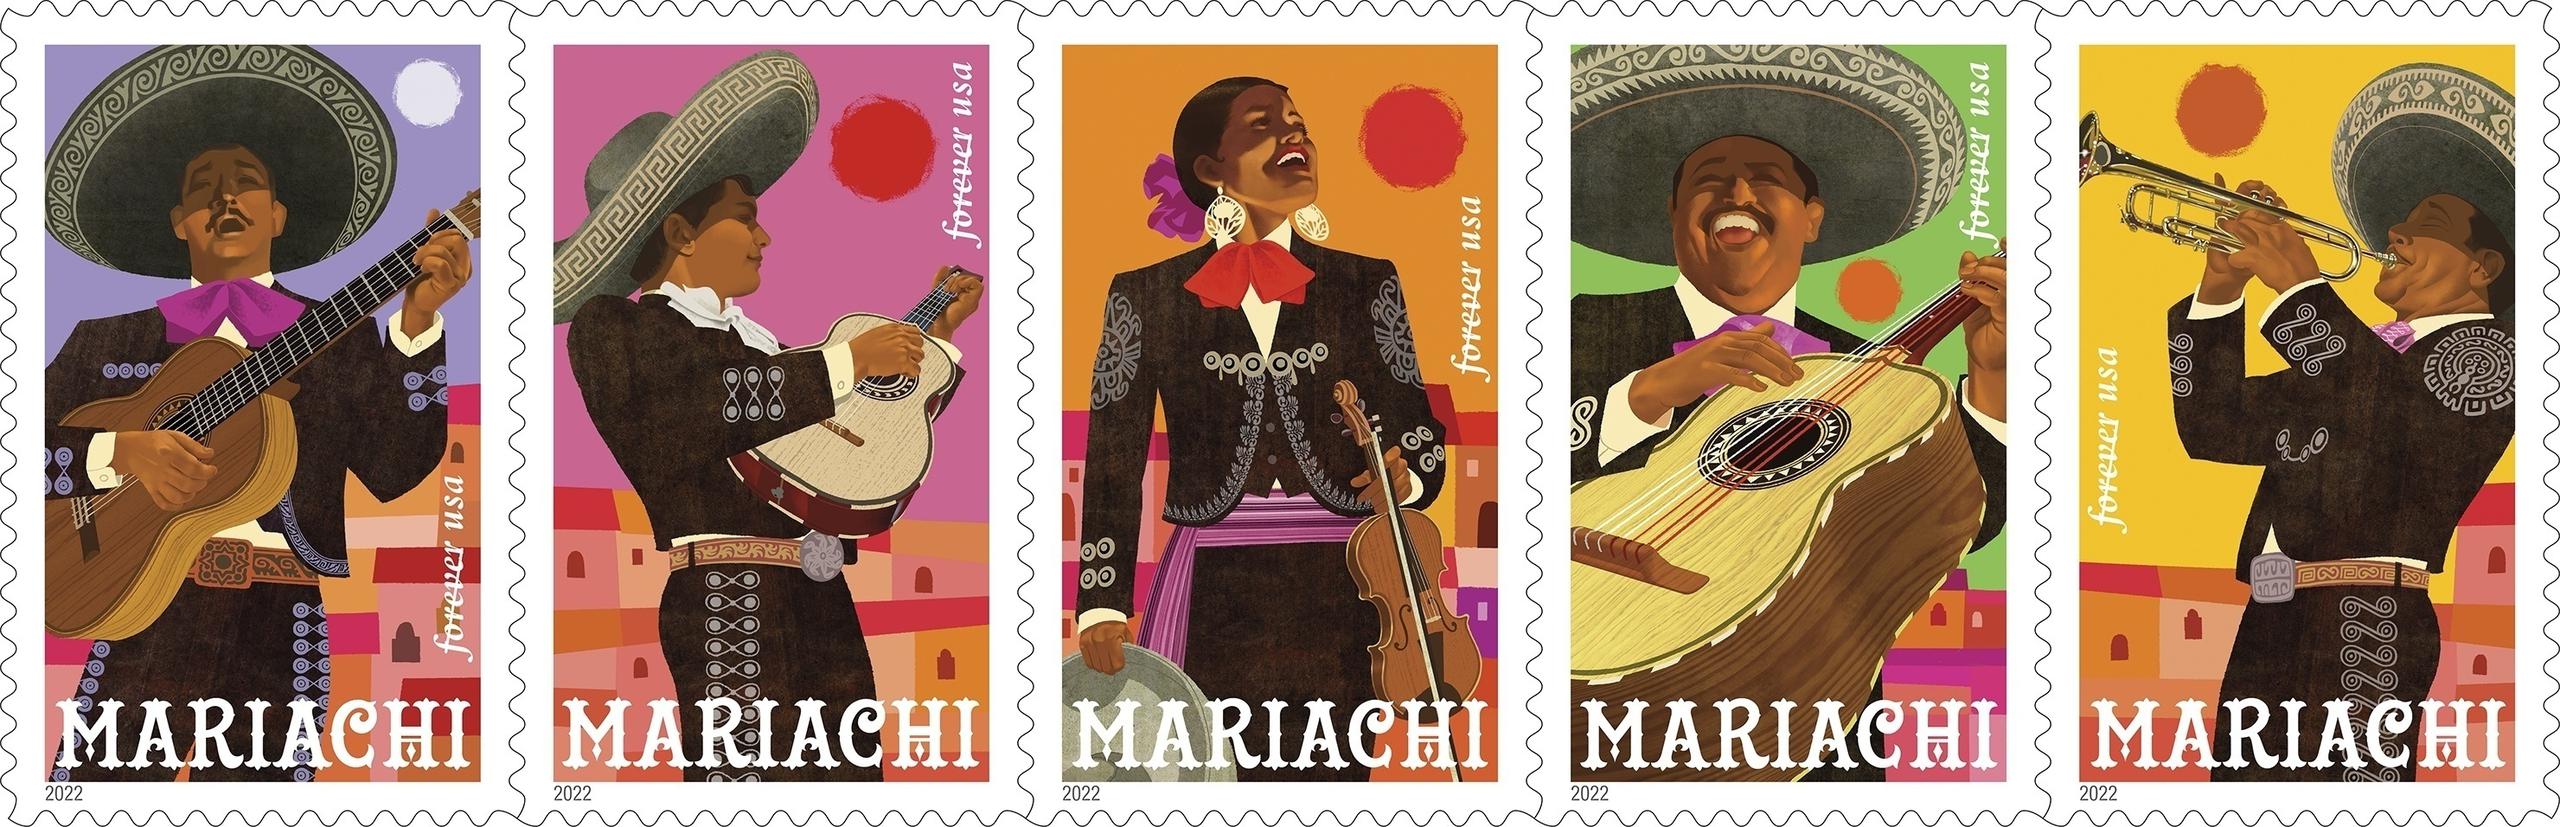 Esta imagen proporcionada por el Servicio Postal de Estados Unidos muestra una serie especial de estampillas de mariachis diseñadas por el artista Rafael López. (Servicio Postal de Estados Unidos vía AP)